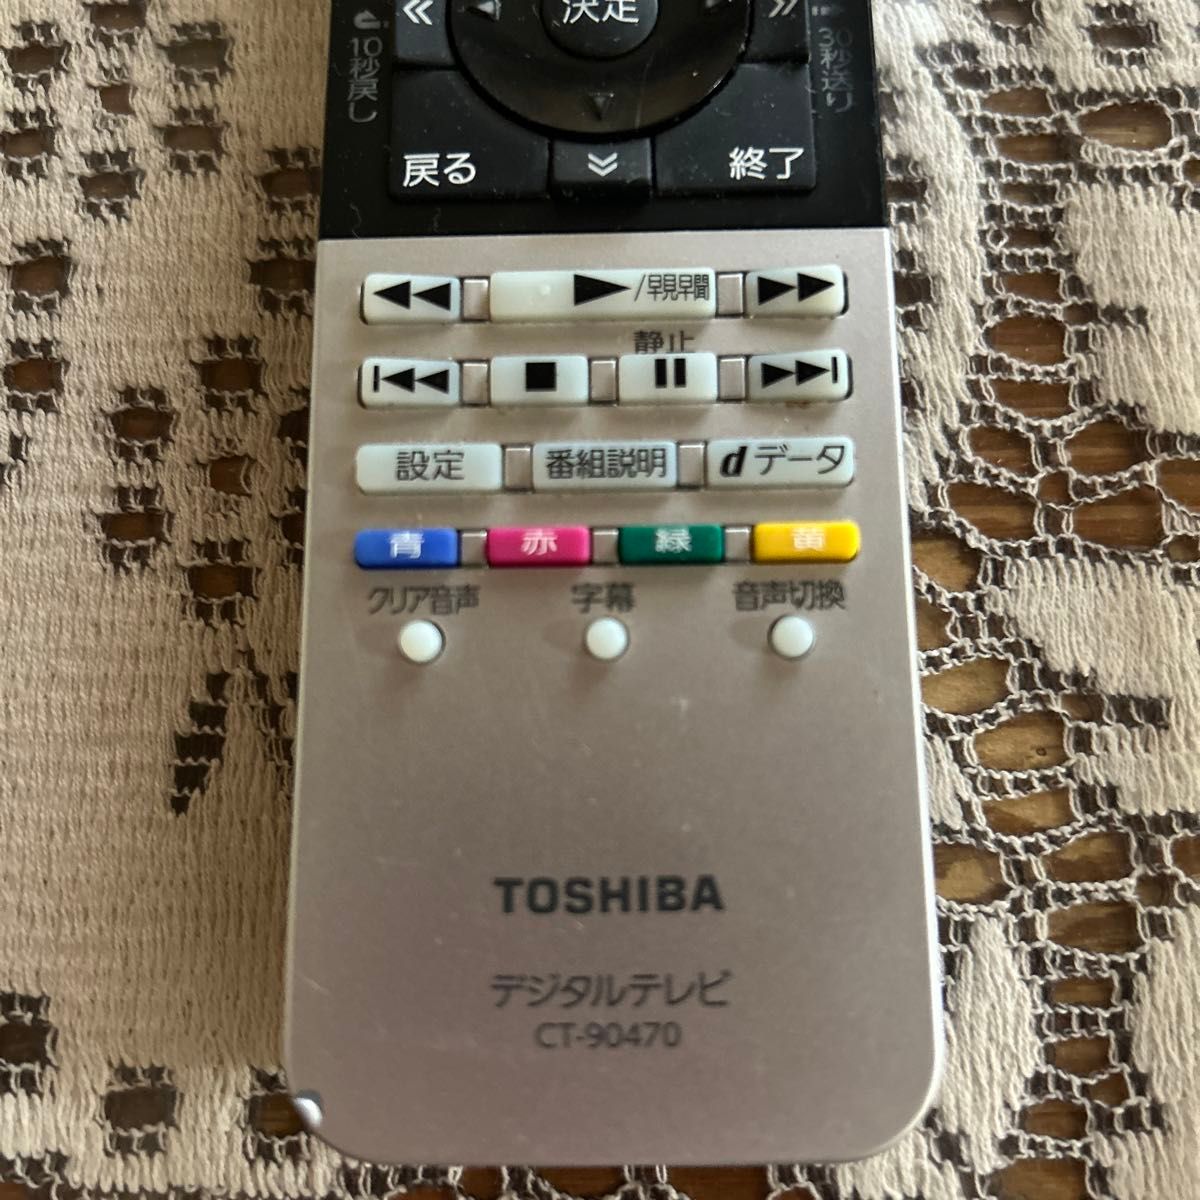 TOSHIBA デジタルテレビリモコンCT-90470｜Yahoo!フリマ（旧PayPayフリマ）